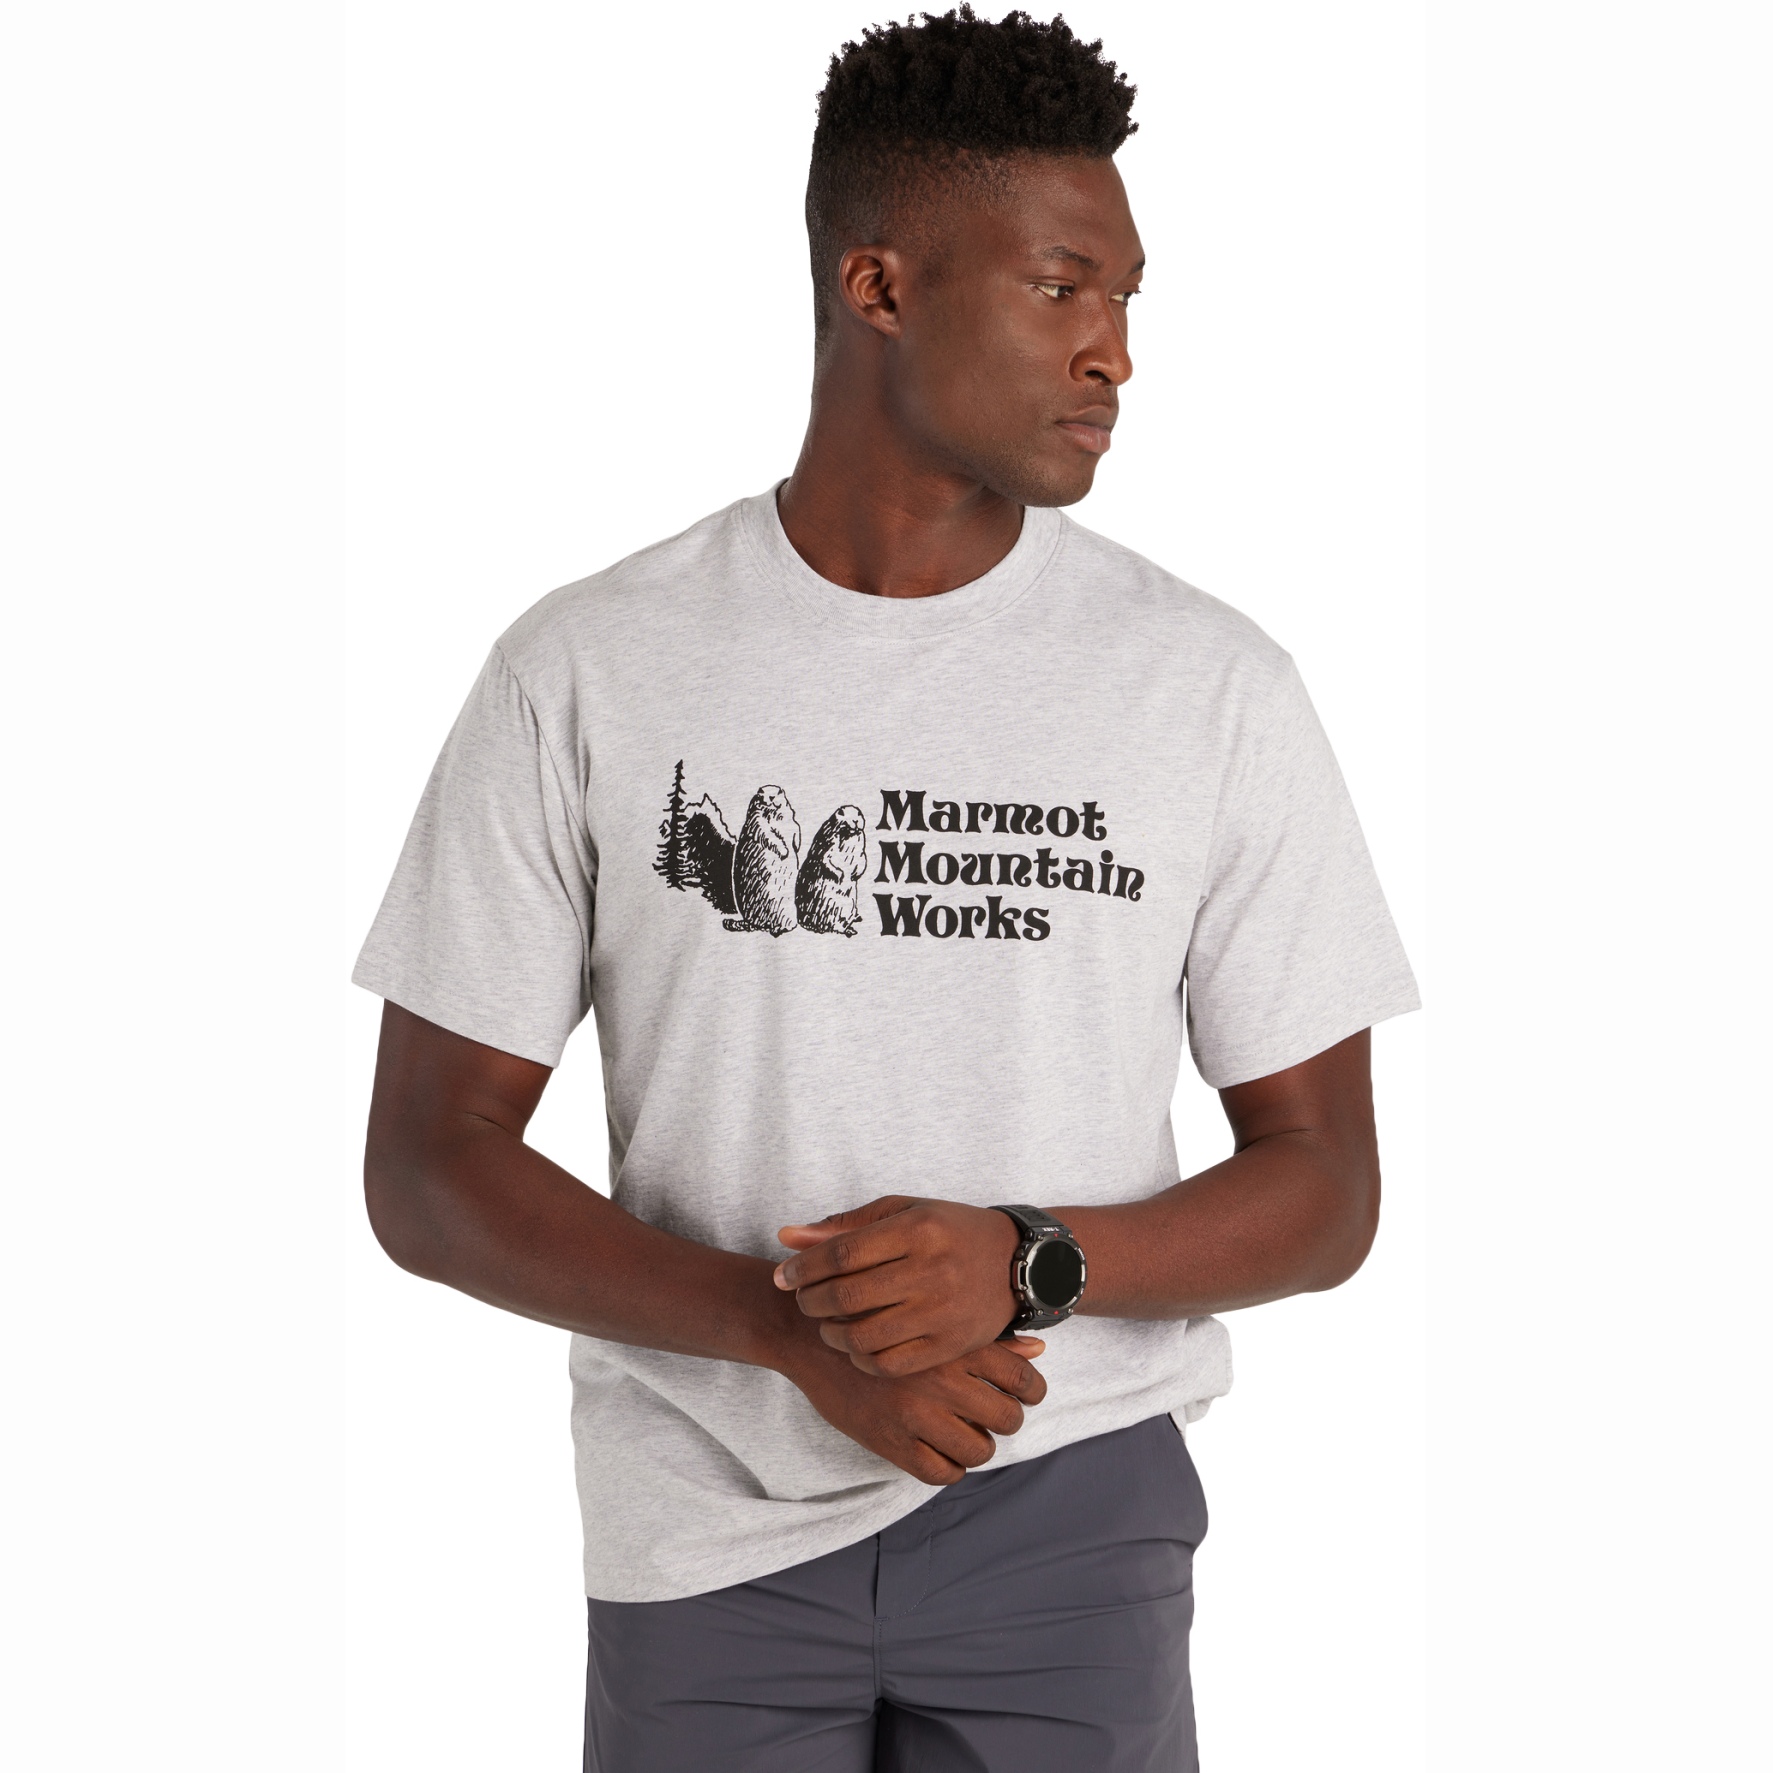 Produktbild von Marmot Mountain Works T-Shirt Herren - light grey heather